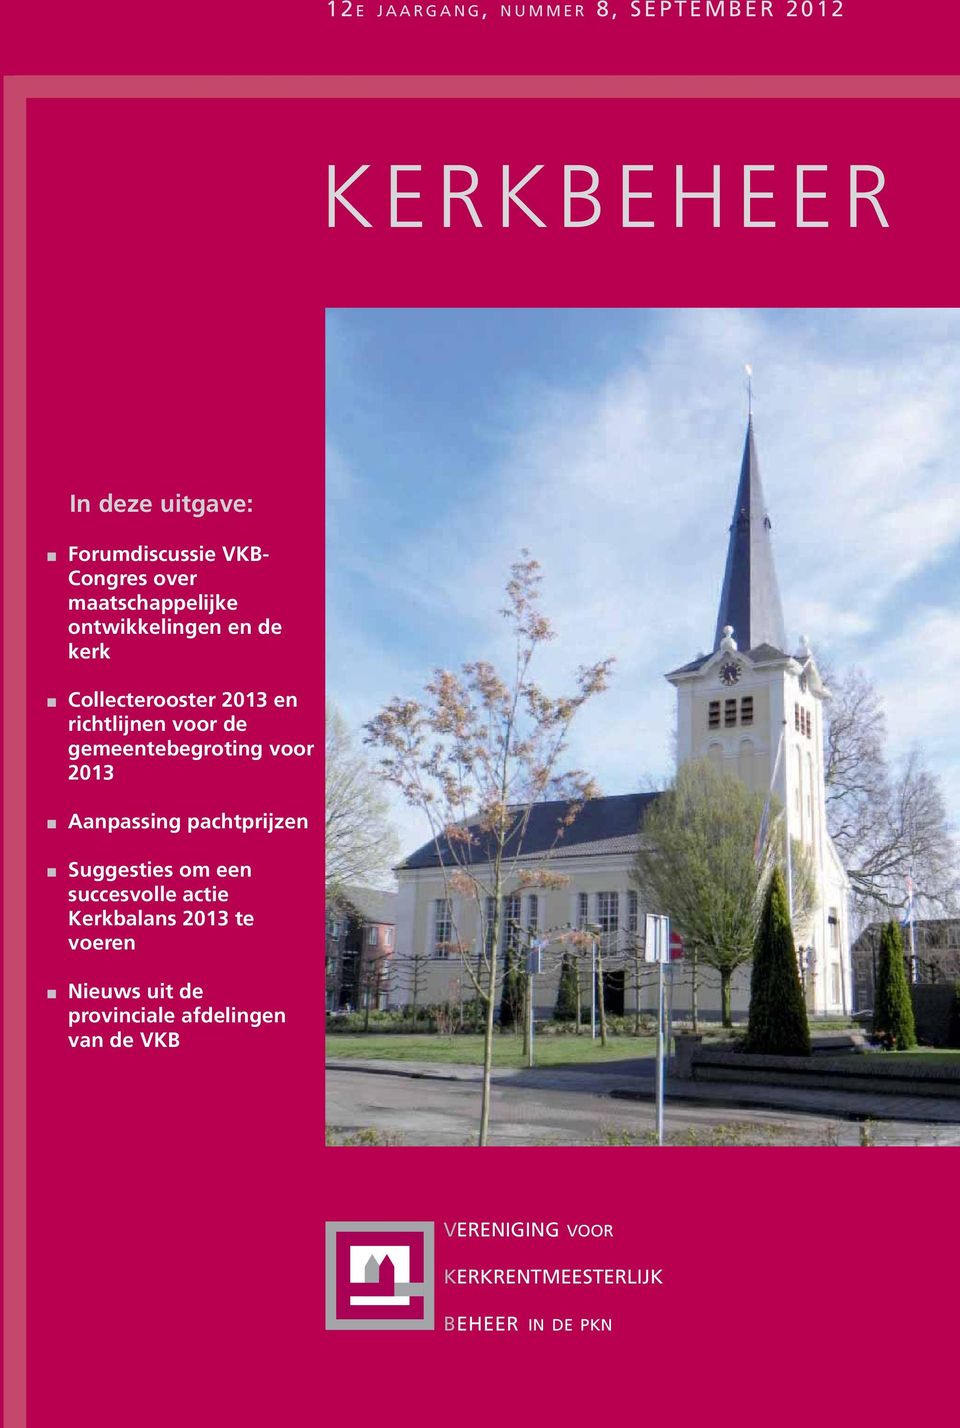 gemeentebegroting voor 2013 Aanpassing pachtprijzen Suggesties om een succesvolle actie Kerkbalans